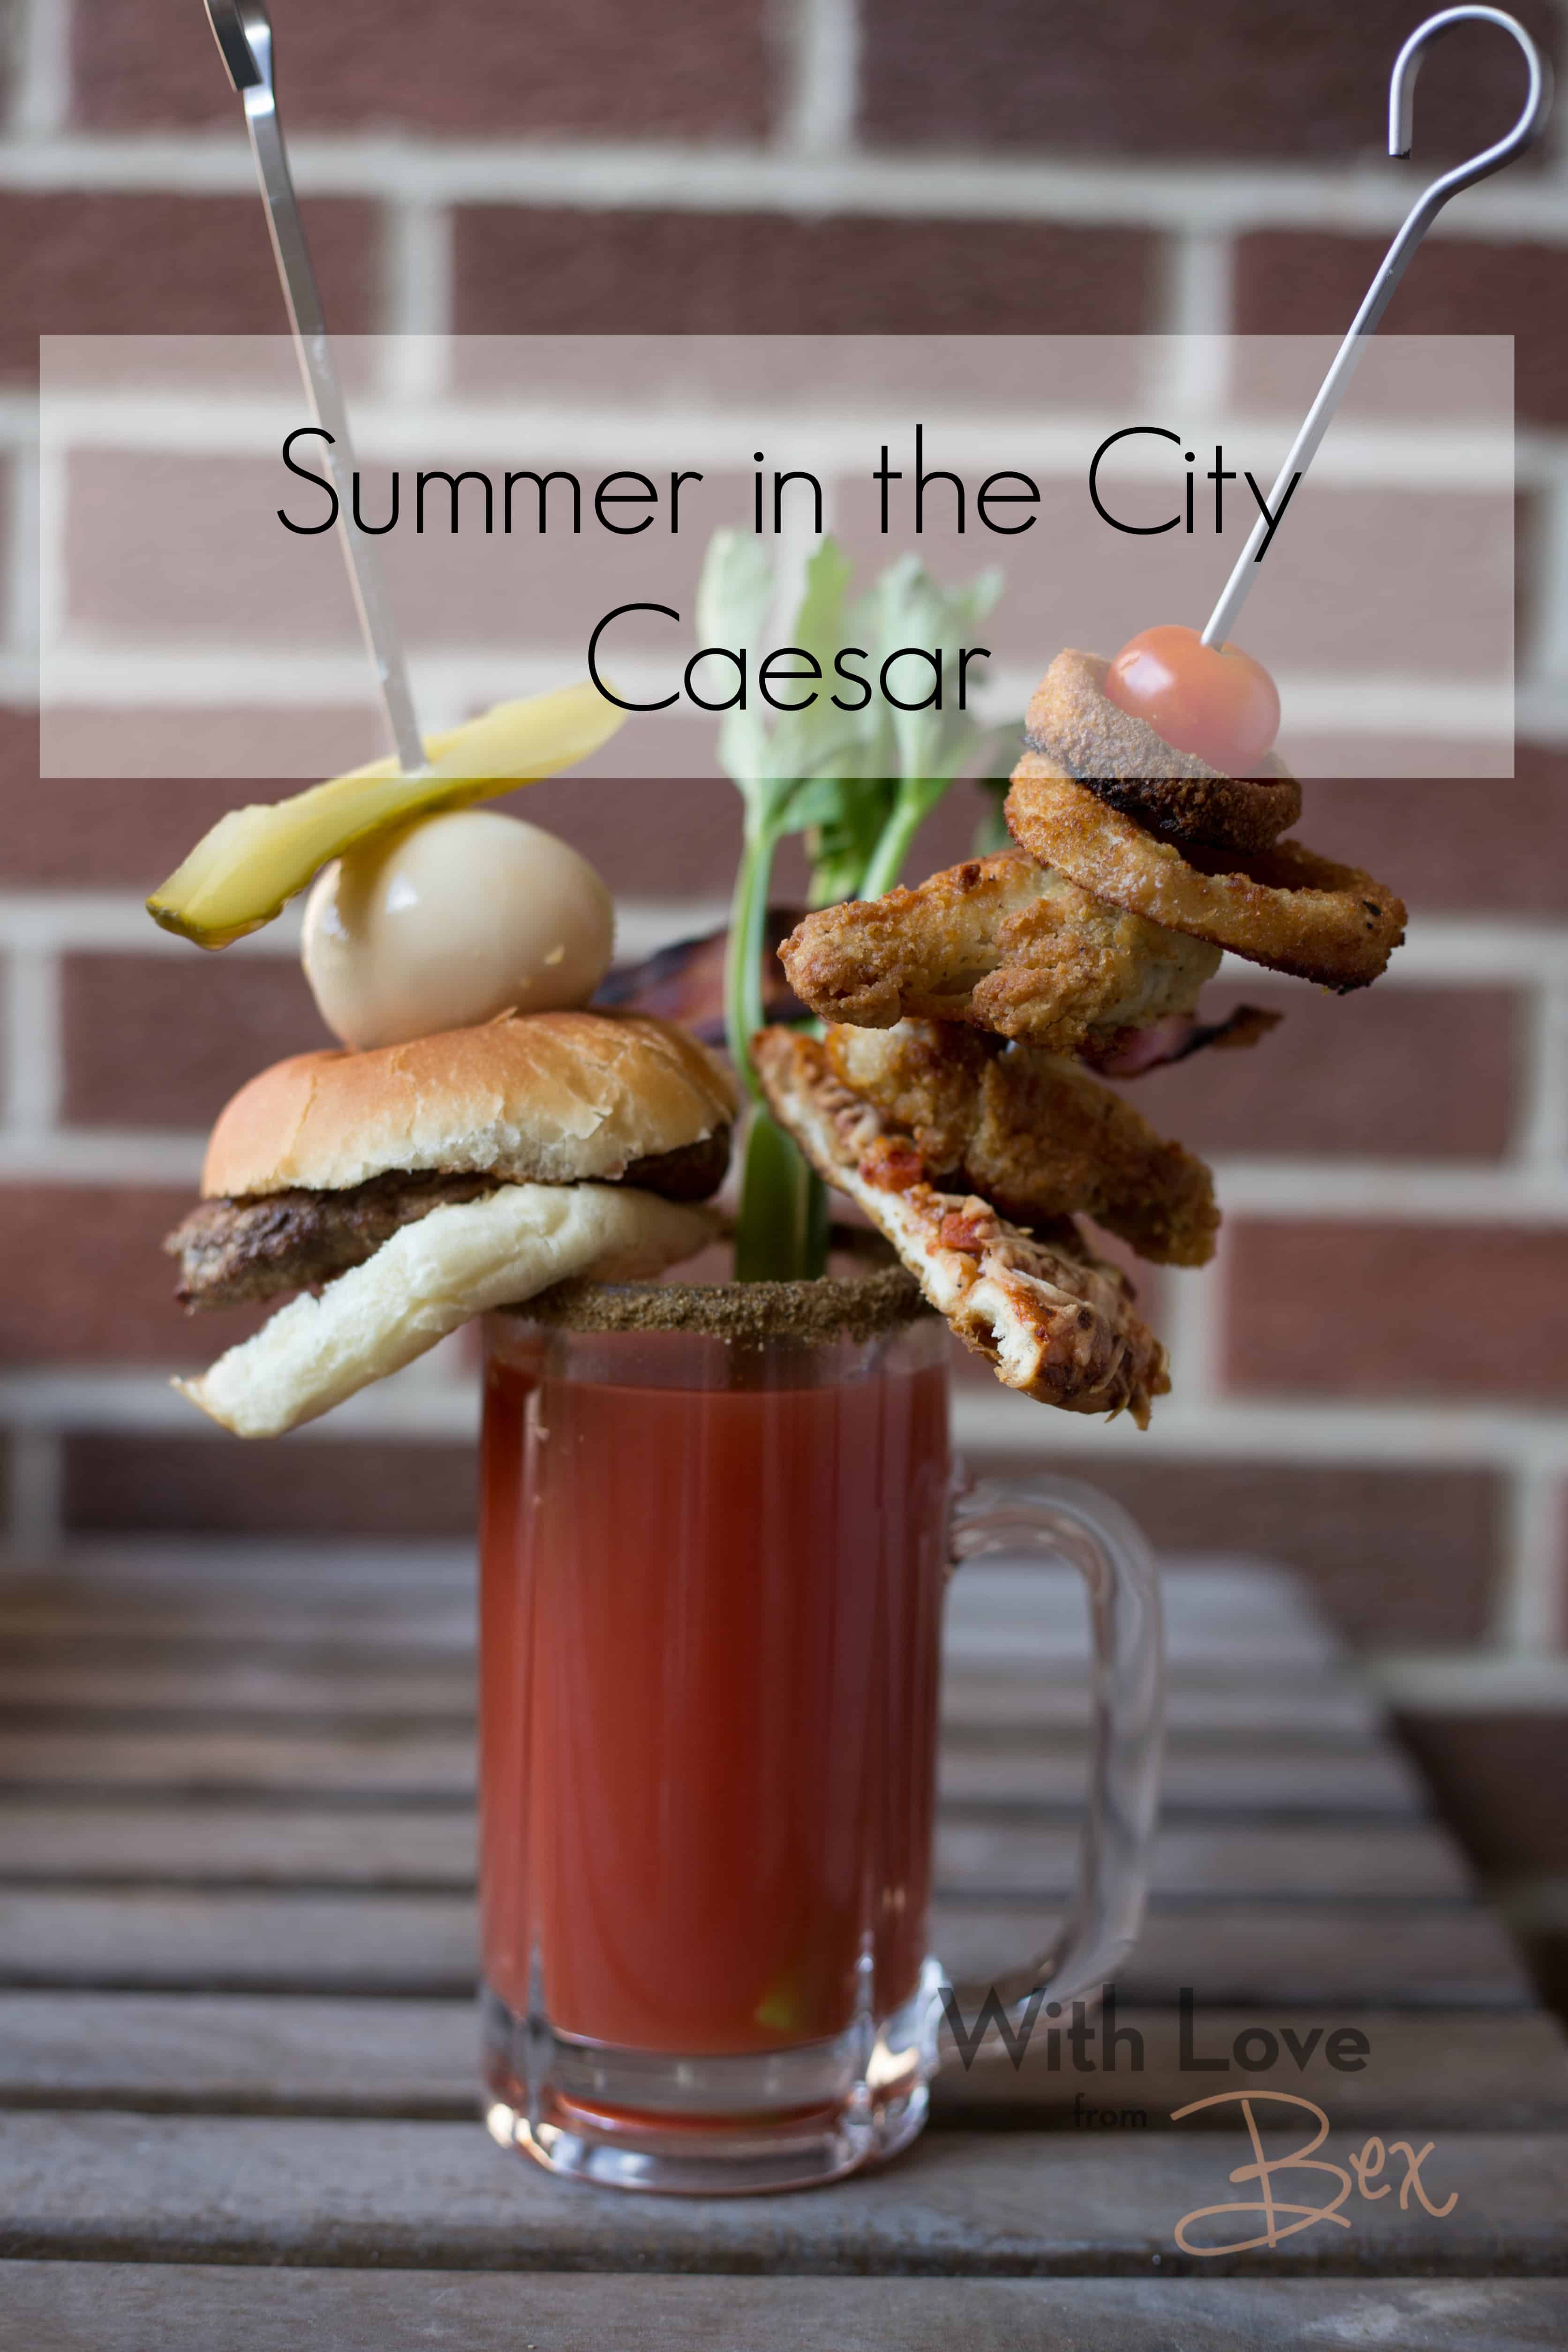 Caesar Summer Series: Summer in the City Caesar